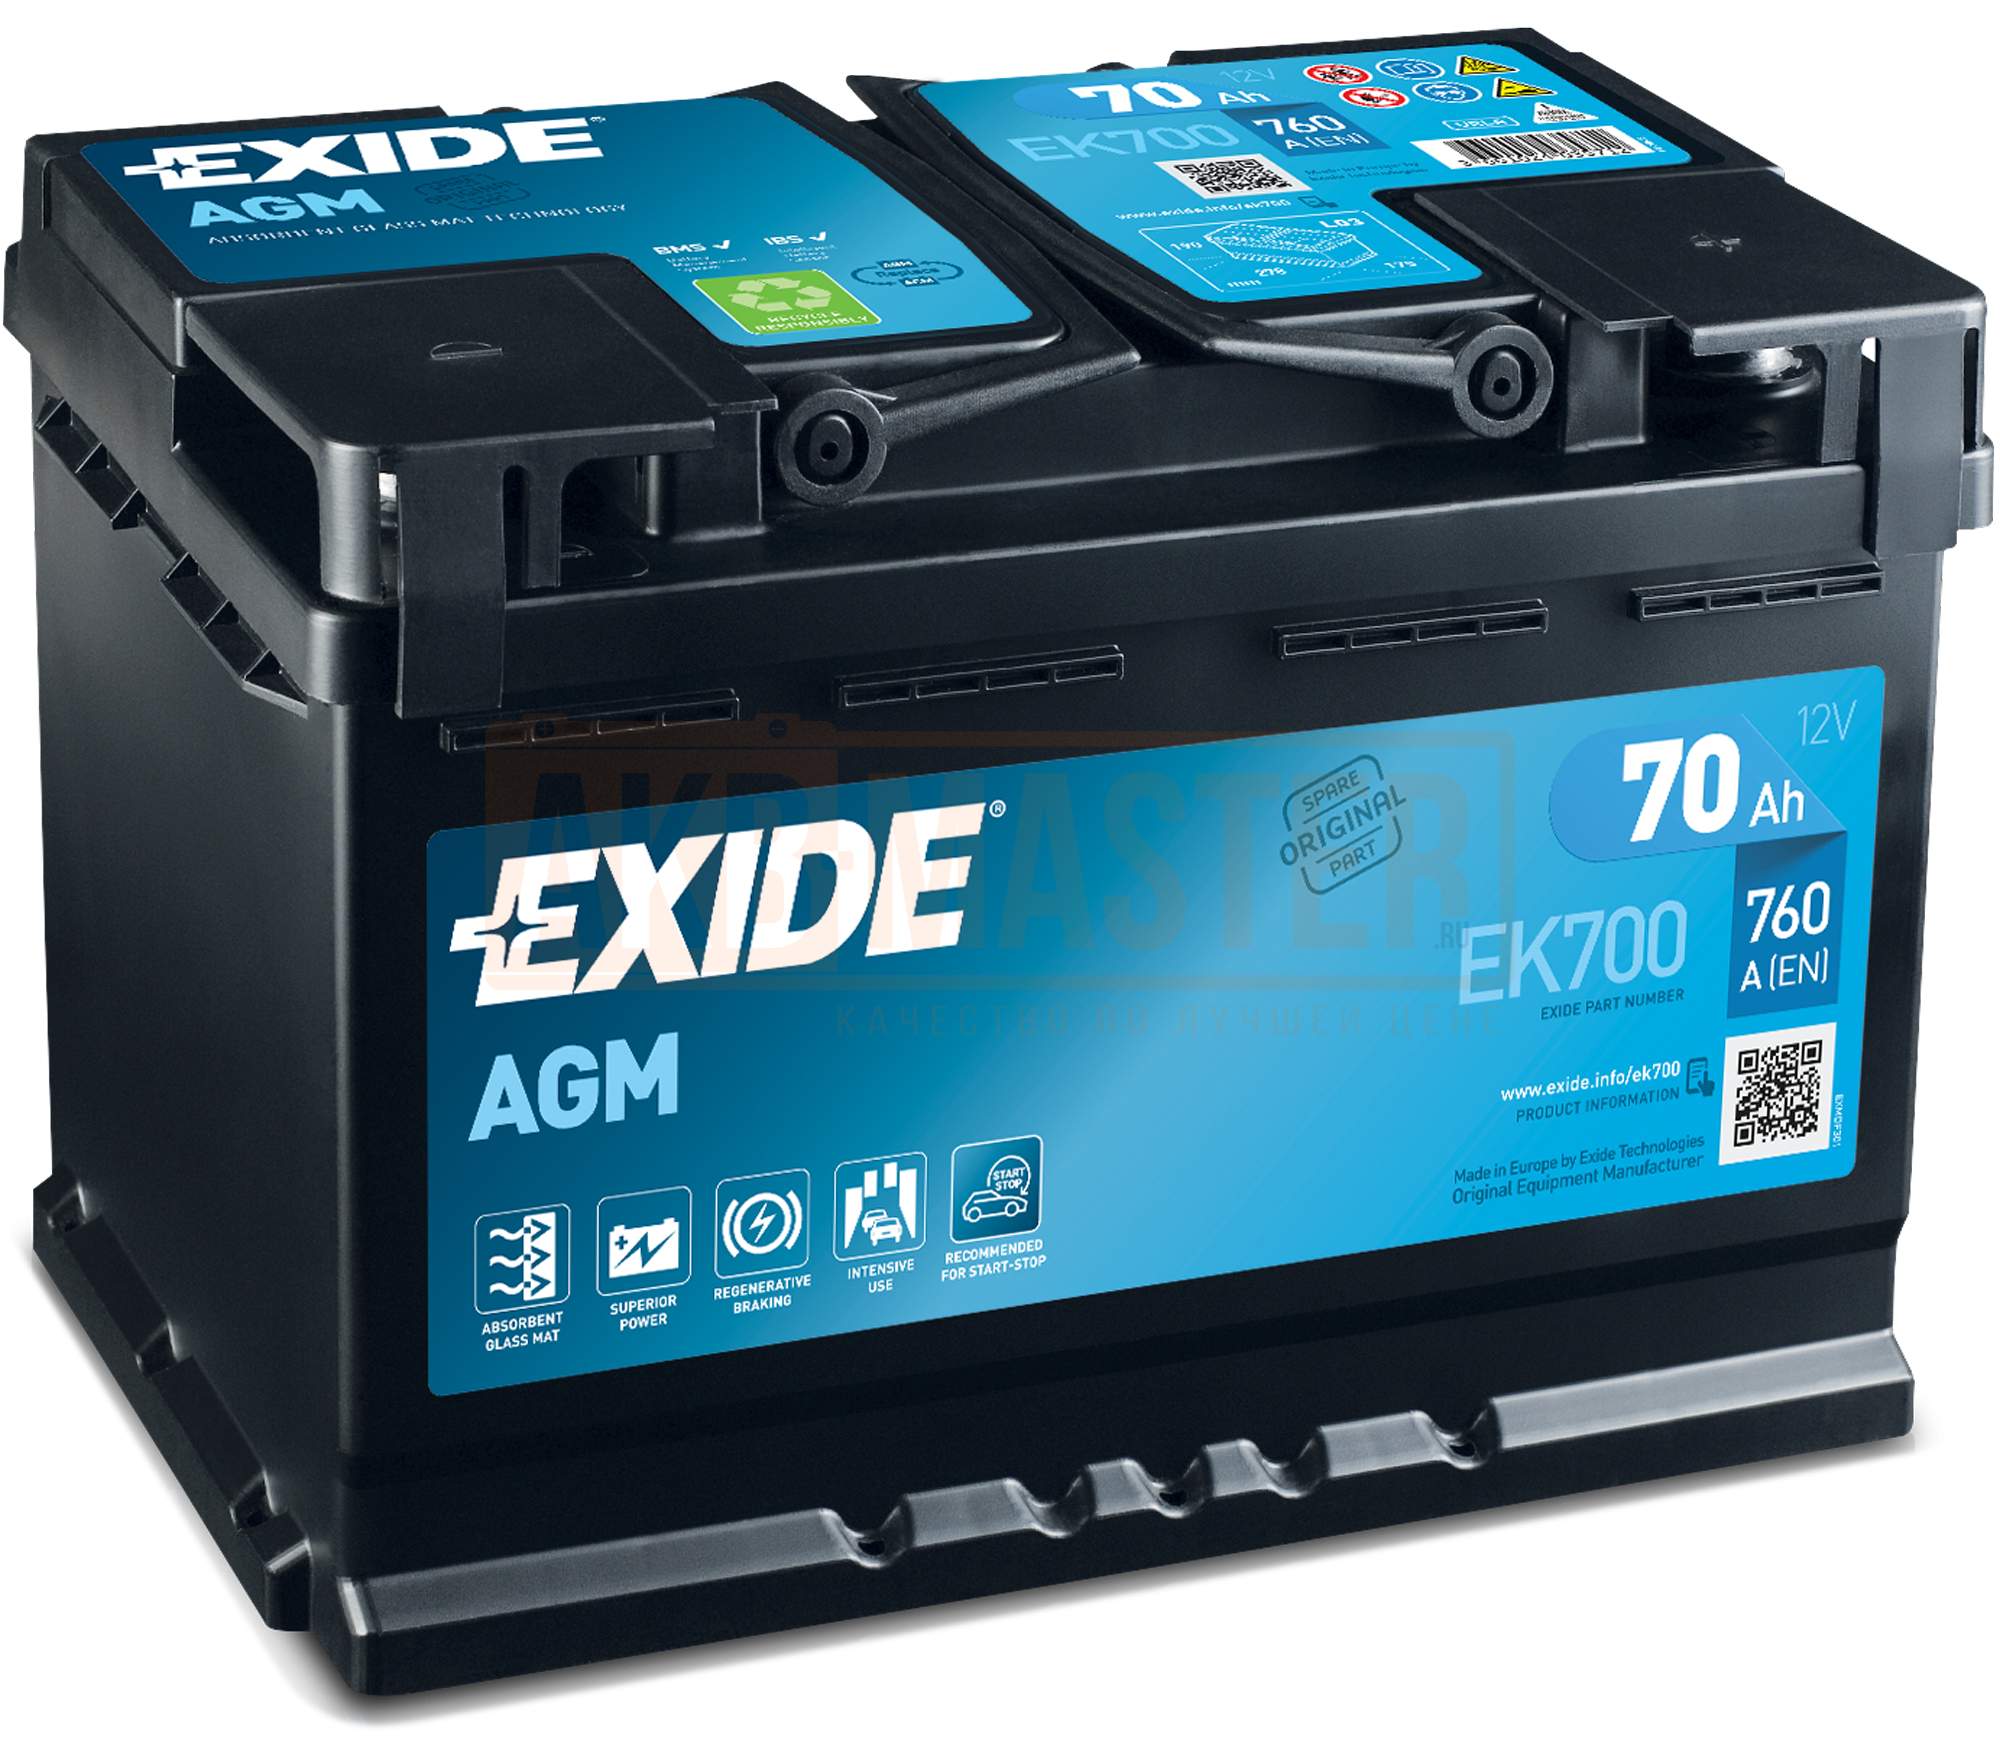 Exide el700 аккумулятор. Exide start-stop AGM ek700. Аккумулятор Exide Excell eb604. Аккумулятор Exide AGM 70ah. Отзывы о аккумуляторах автомобильных